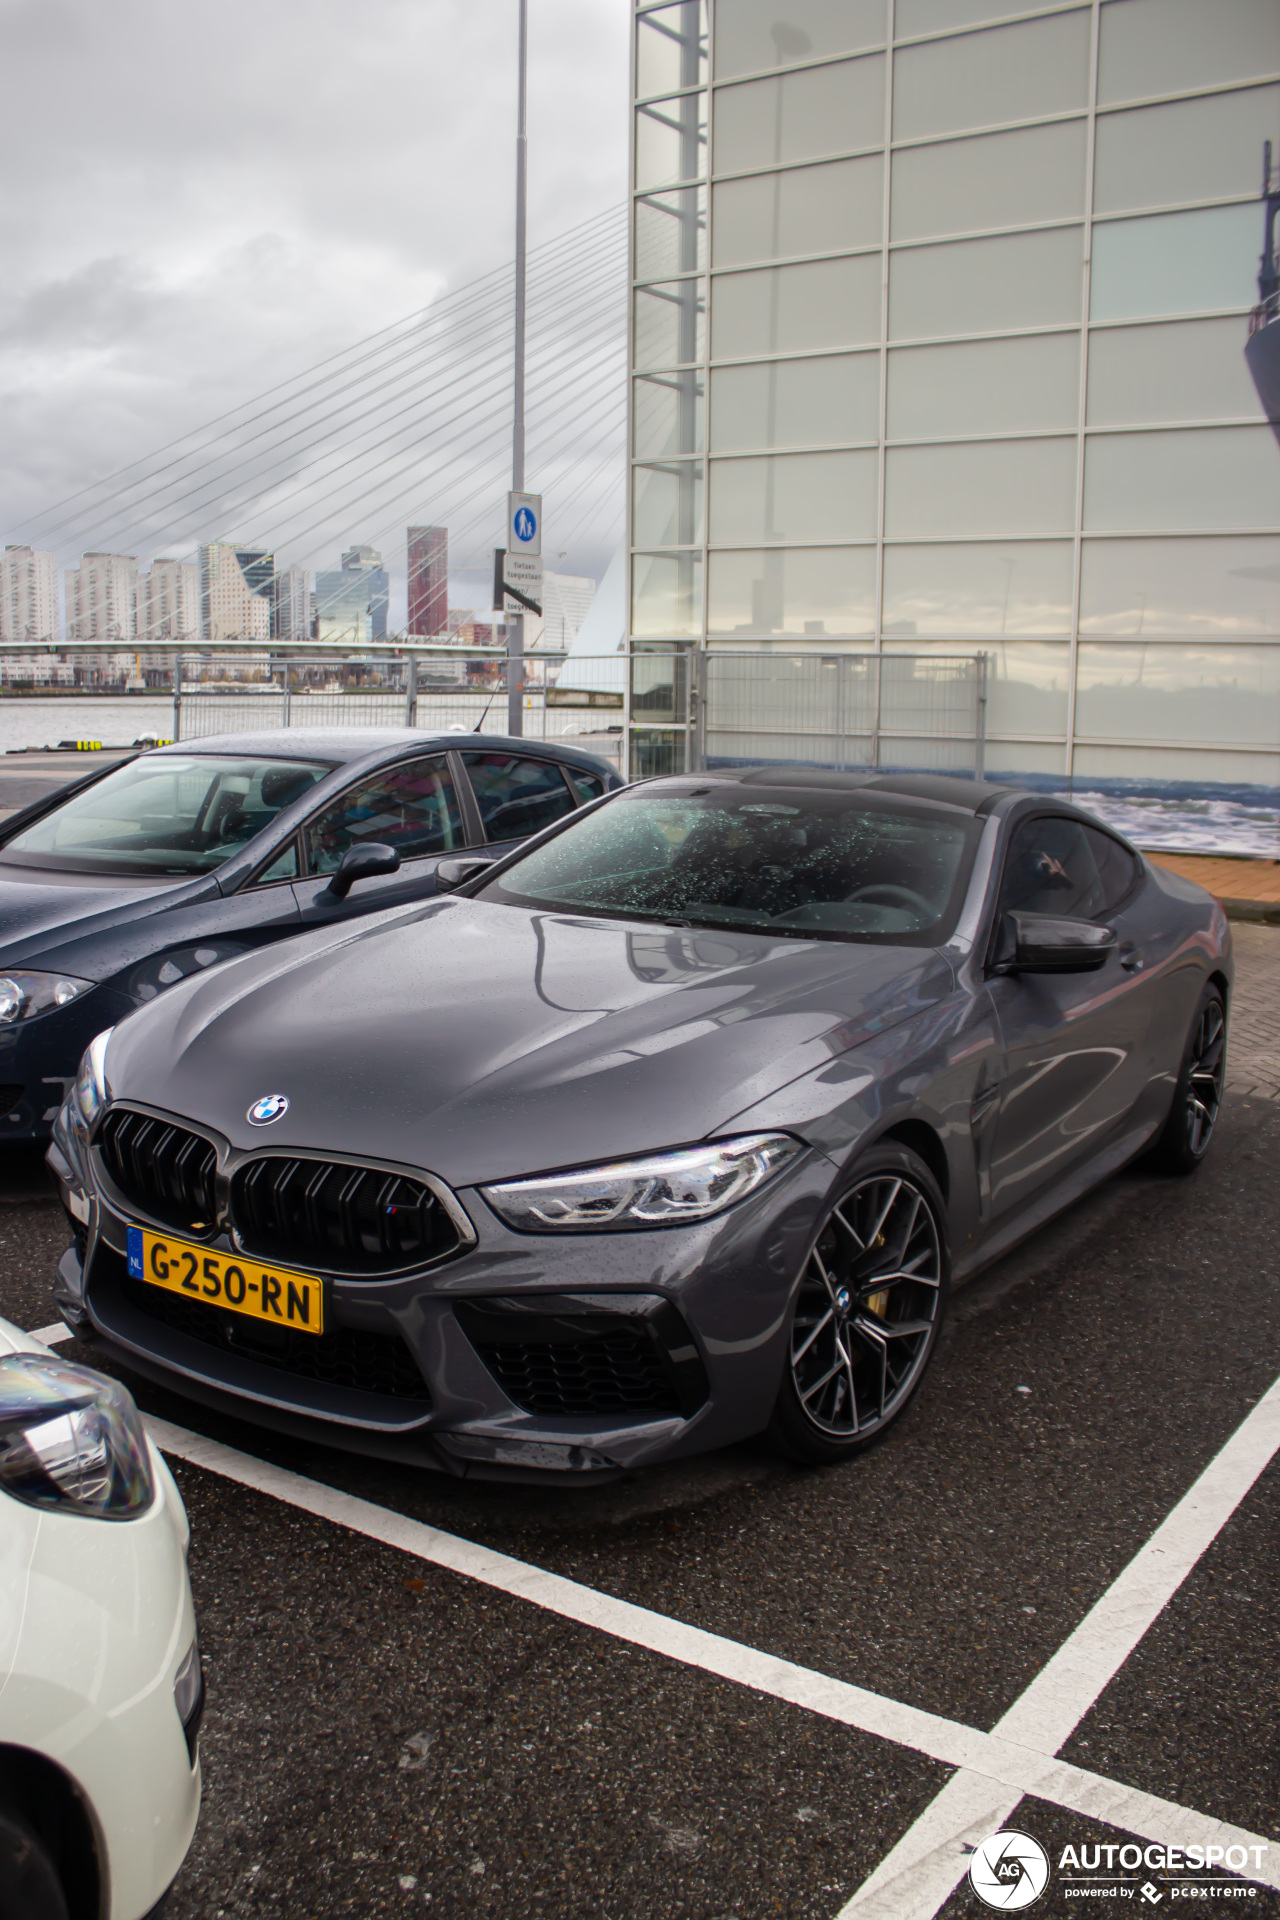 Spot van de dag: eerste BMW M8 Competition in Nederland gespot